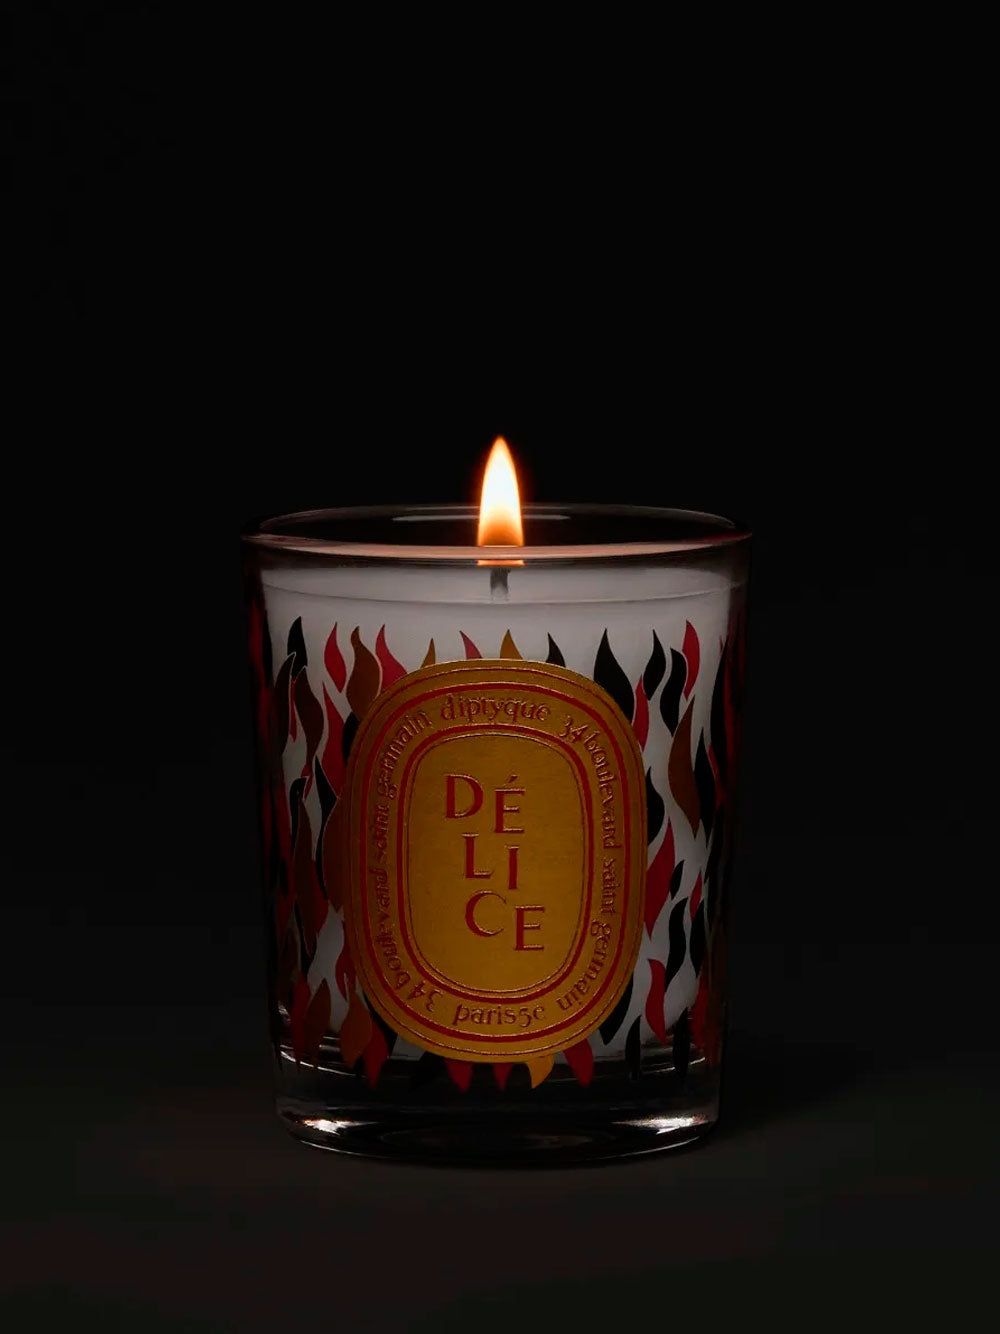 Délice candle 70g. Ltd. Edition